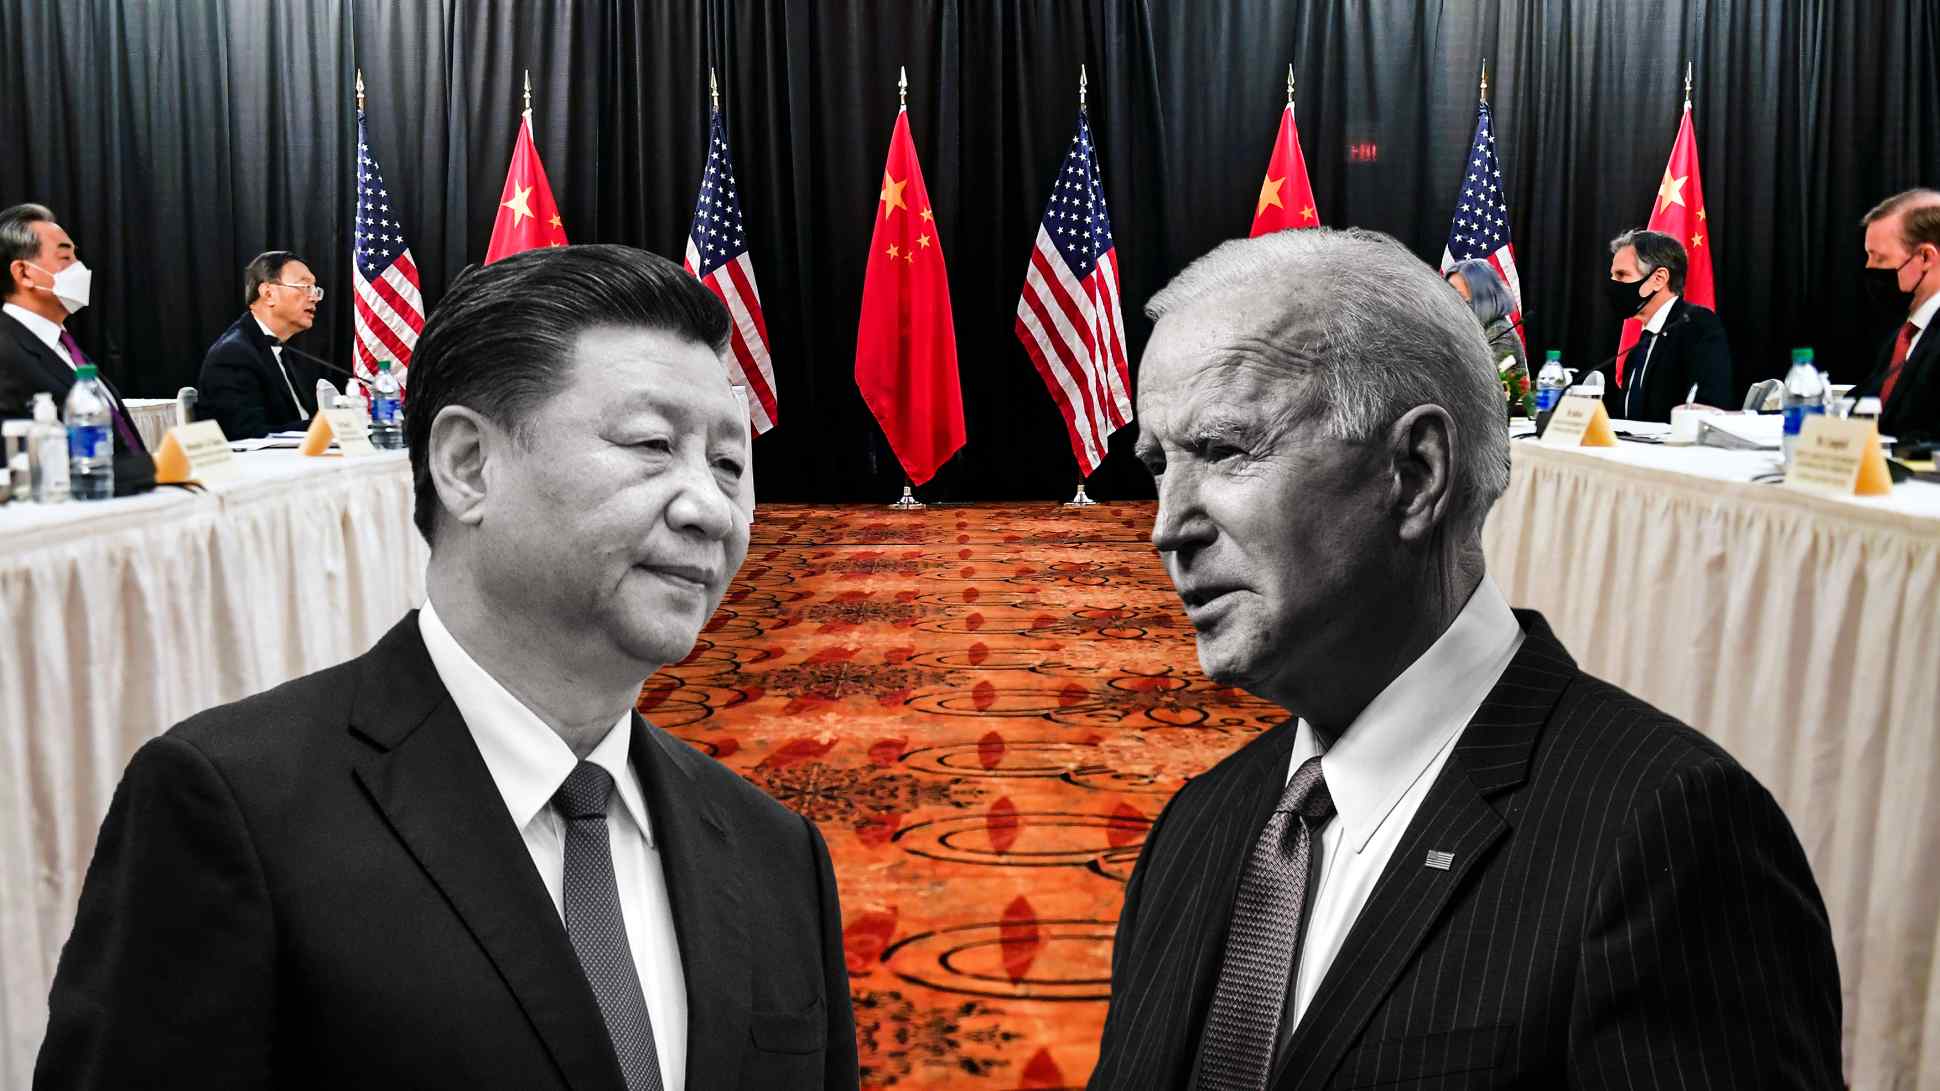 آیا بعد از نبرد با تروریسم زمان جنگ آمریکا با چین فرا خواهد رسید؟